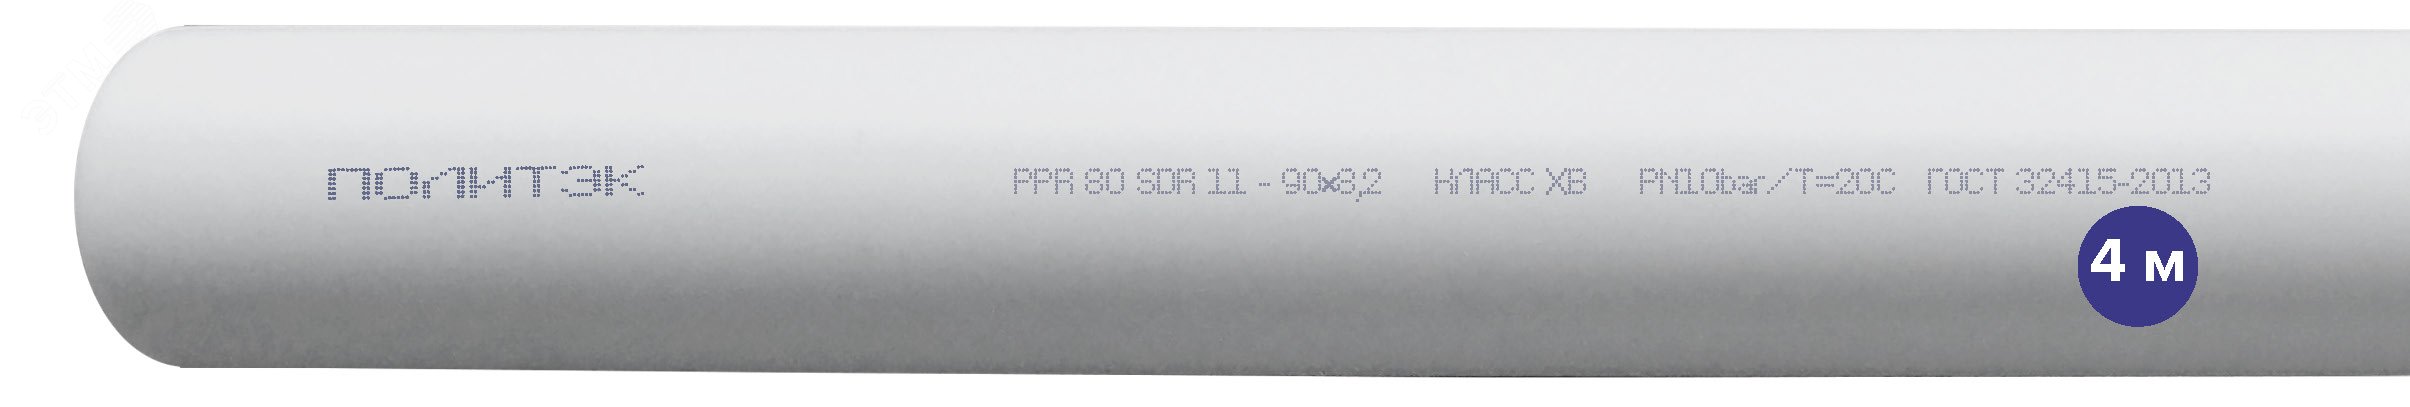 Труба полипропиленовая 90 х 8.2 SDR 11 PN 10 PPR белая, хлыст 4м 90201090082 Политэк - превью 2